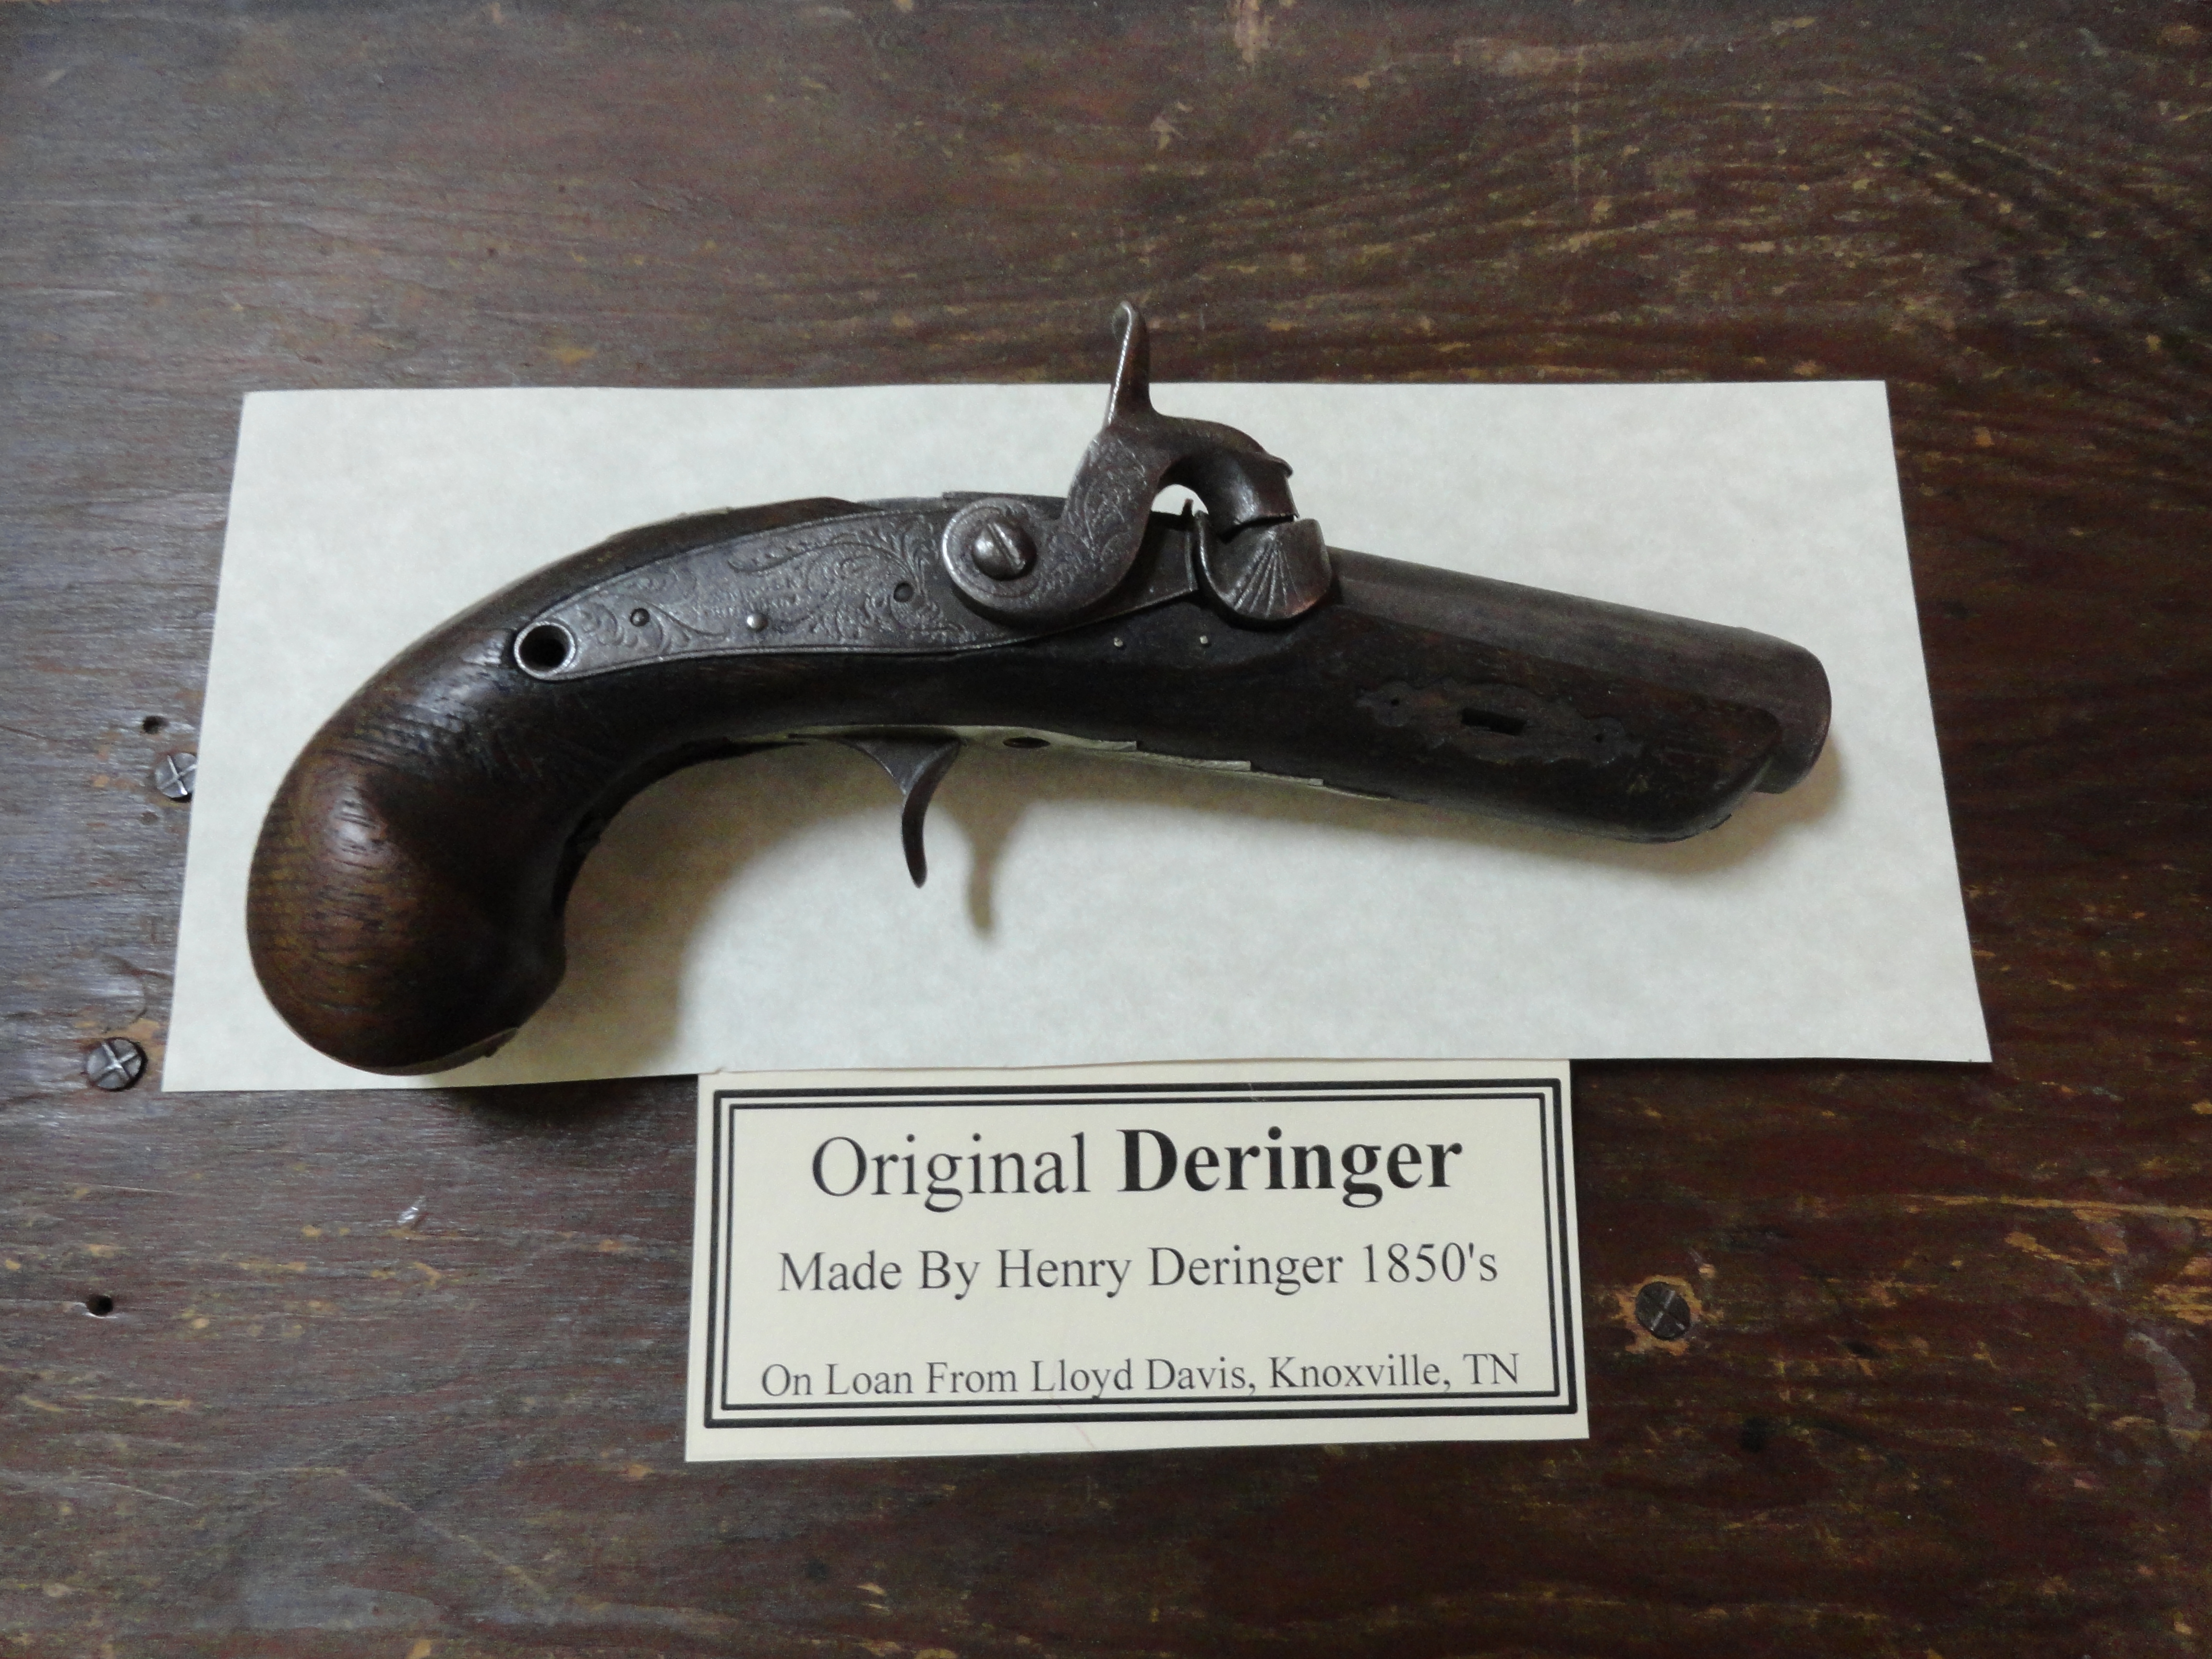 Original Deringer gun, Jefferson County, TN